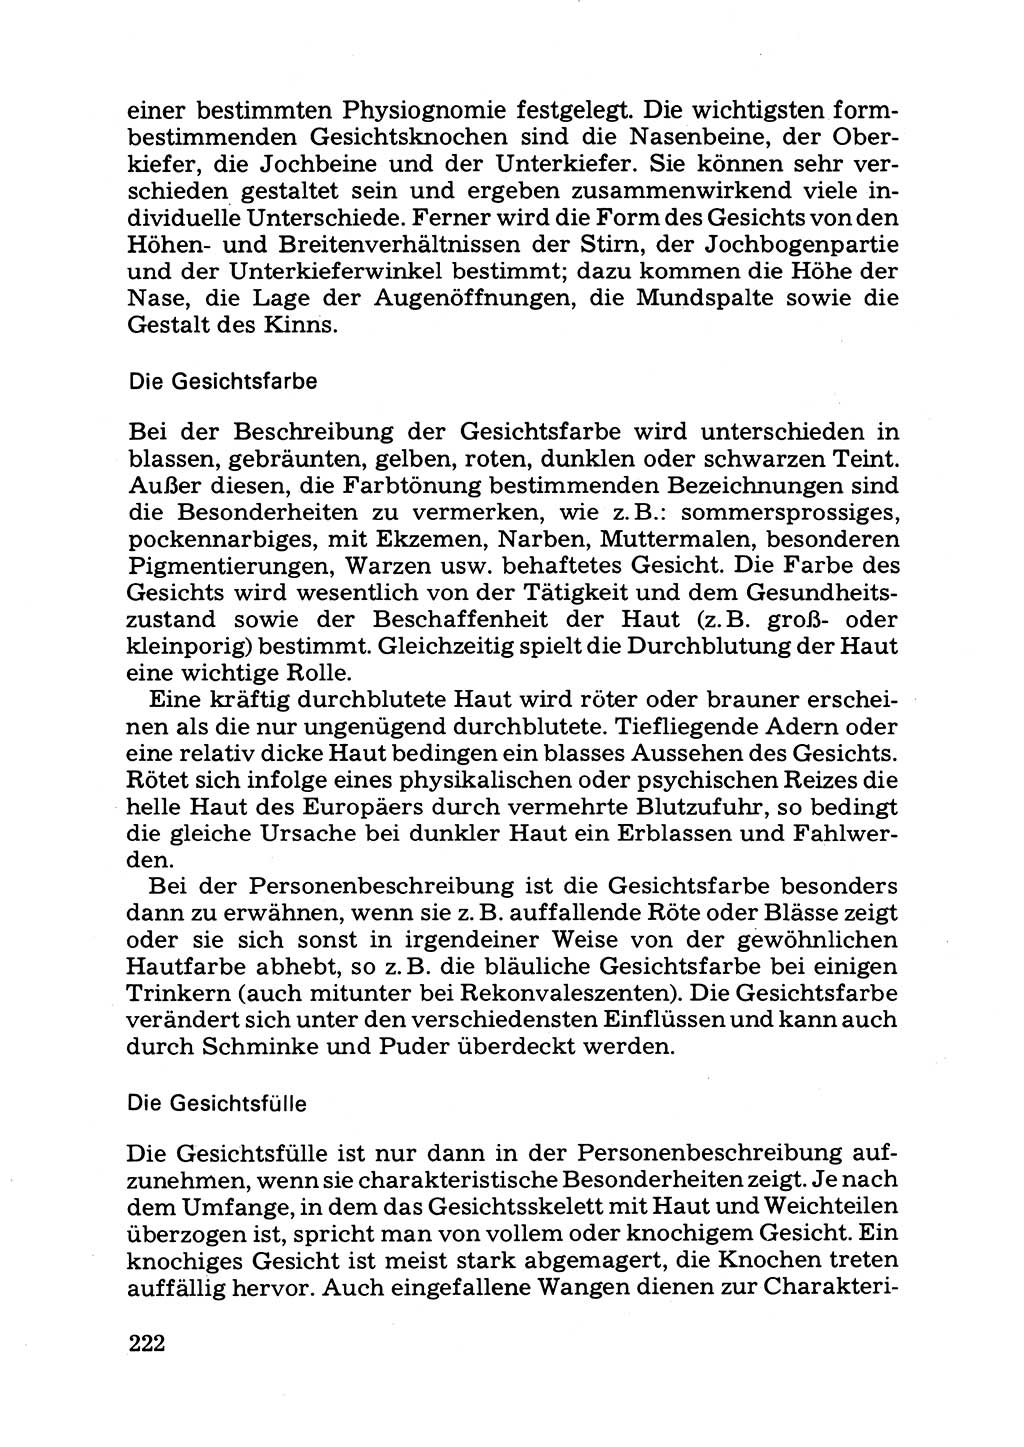 Das subjektive Porträt [Deutsche Demokratische Republik (DDR)] 1981, Seite 222 (Subj. Port. DDR 1981, S. 222)